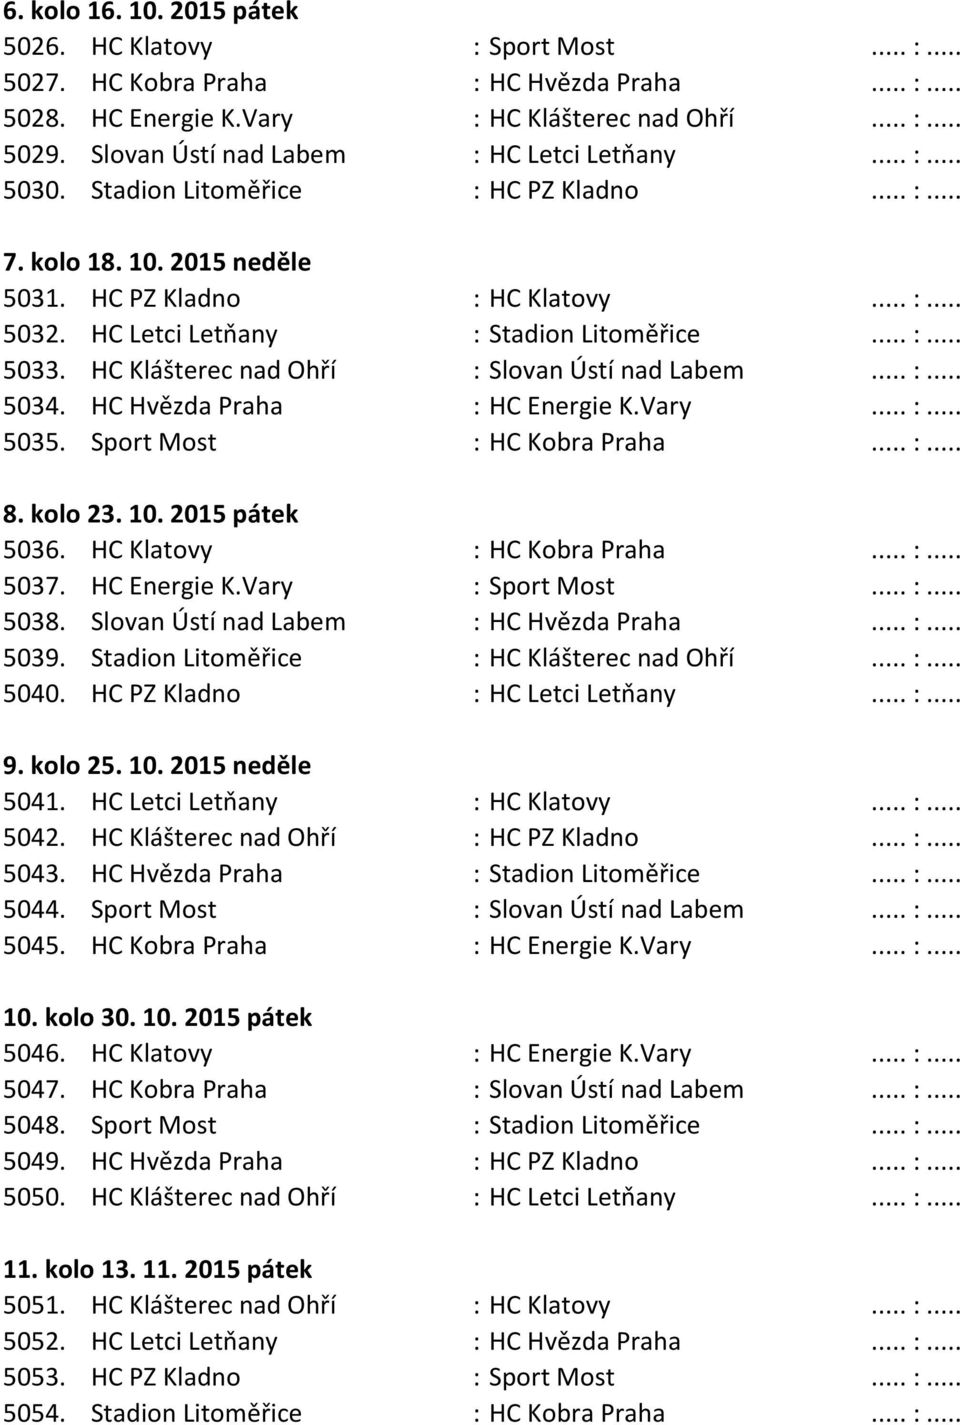 HC Letci Letňany : Stadion Litoměřice... :... 5033. HC Klášterec nad Ohří : Slovan Ústí nad Labem... :... 5034. HC Hvězda Praha : HC Energie K.Vary... :... 5035. Sport Most : HC Kobra Praha... :... 8.